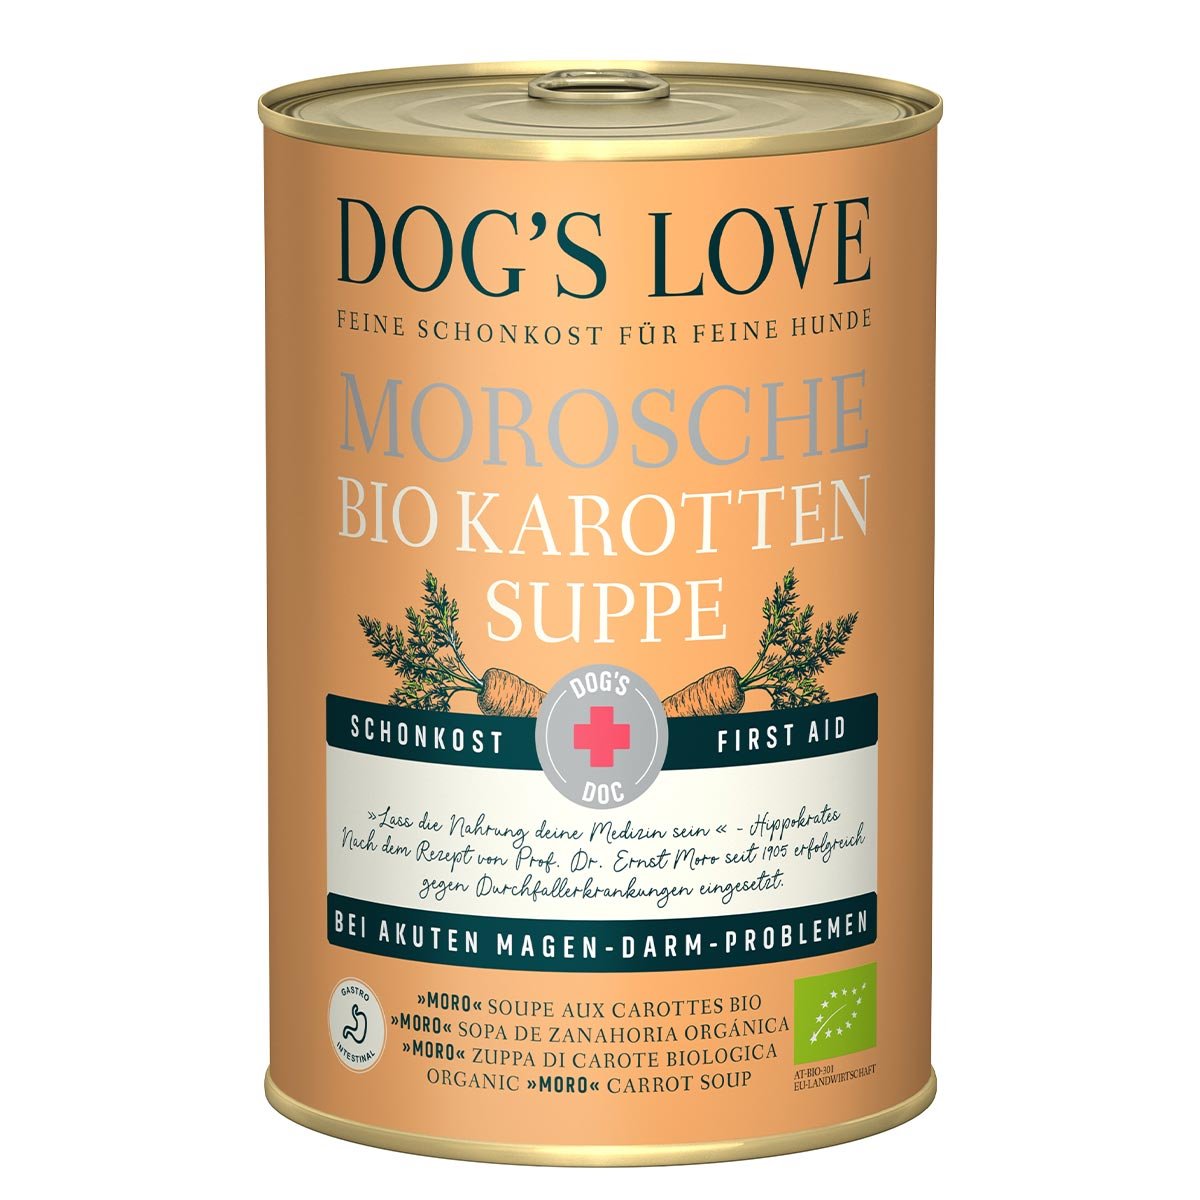 Dog's Love DOC Morosche BIO Karottensuppe 6x400g von Dog's Love